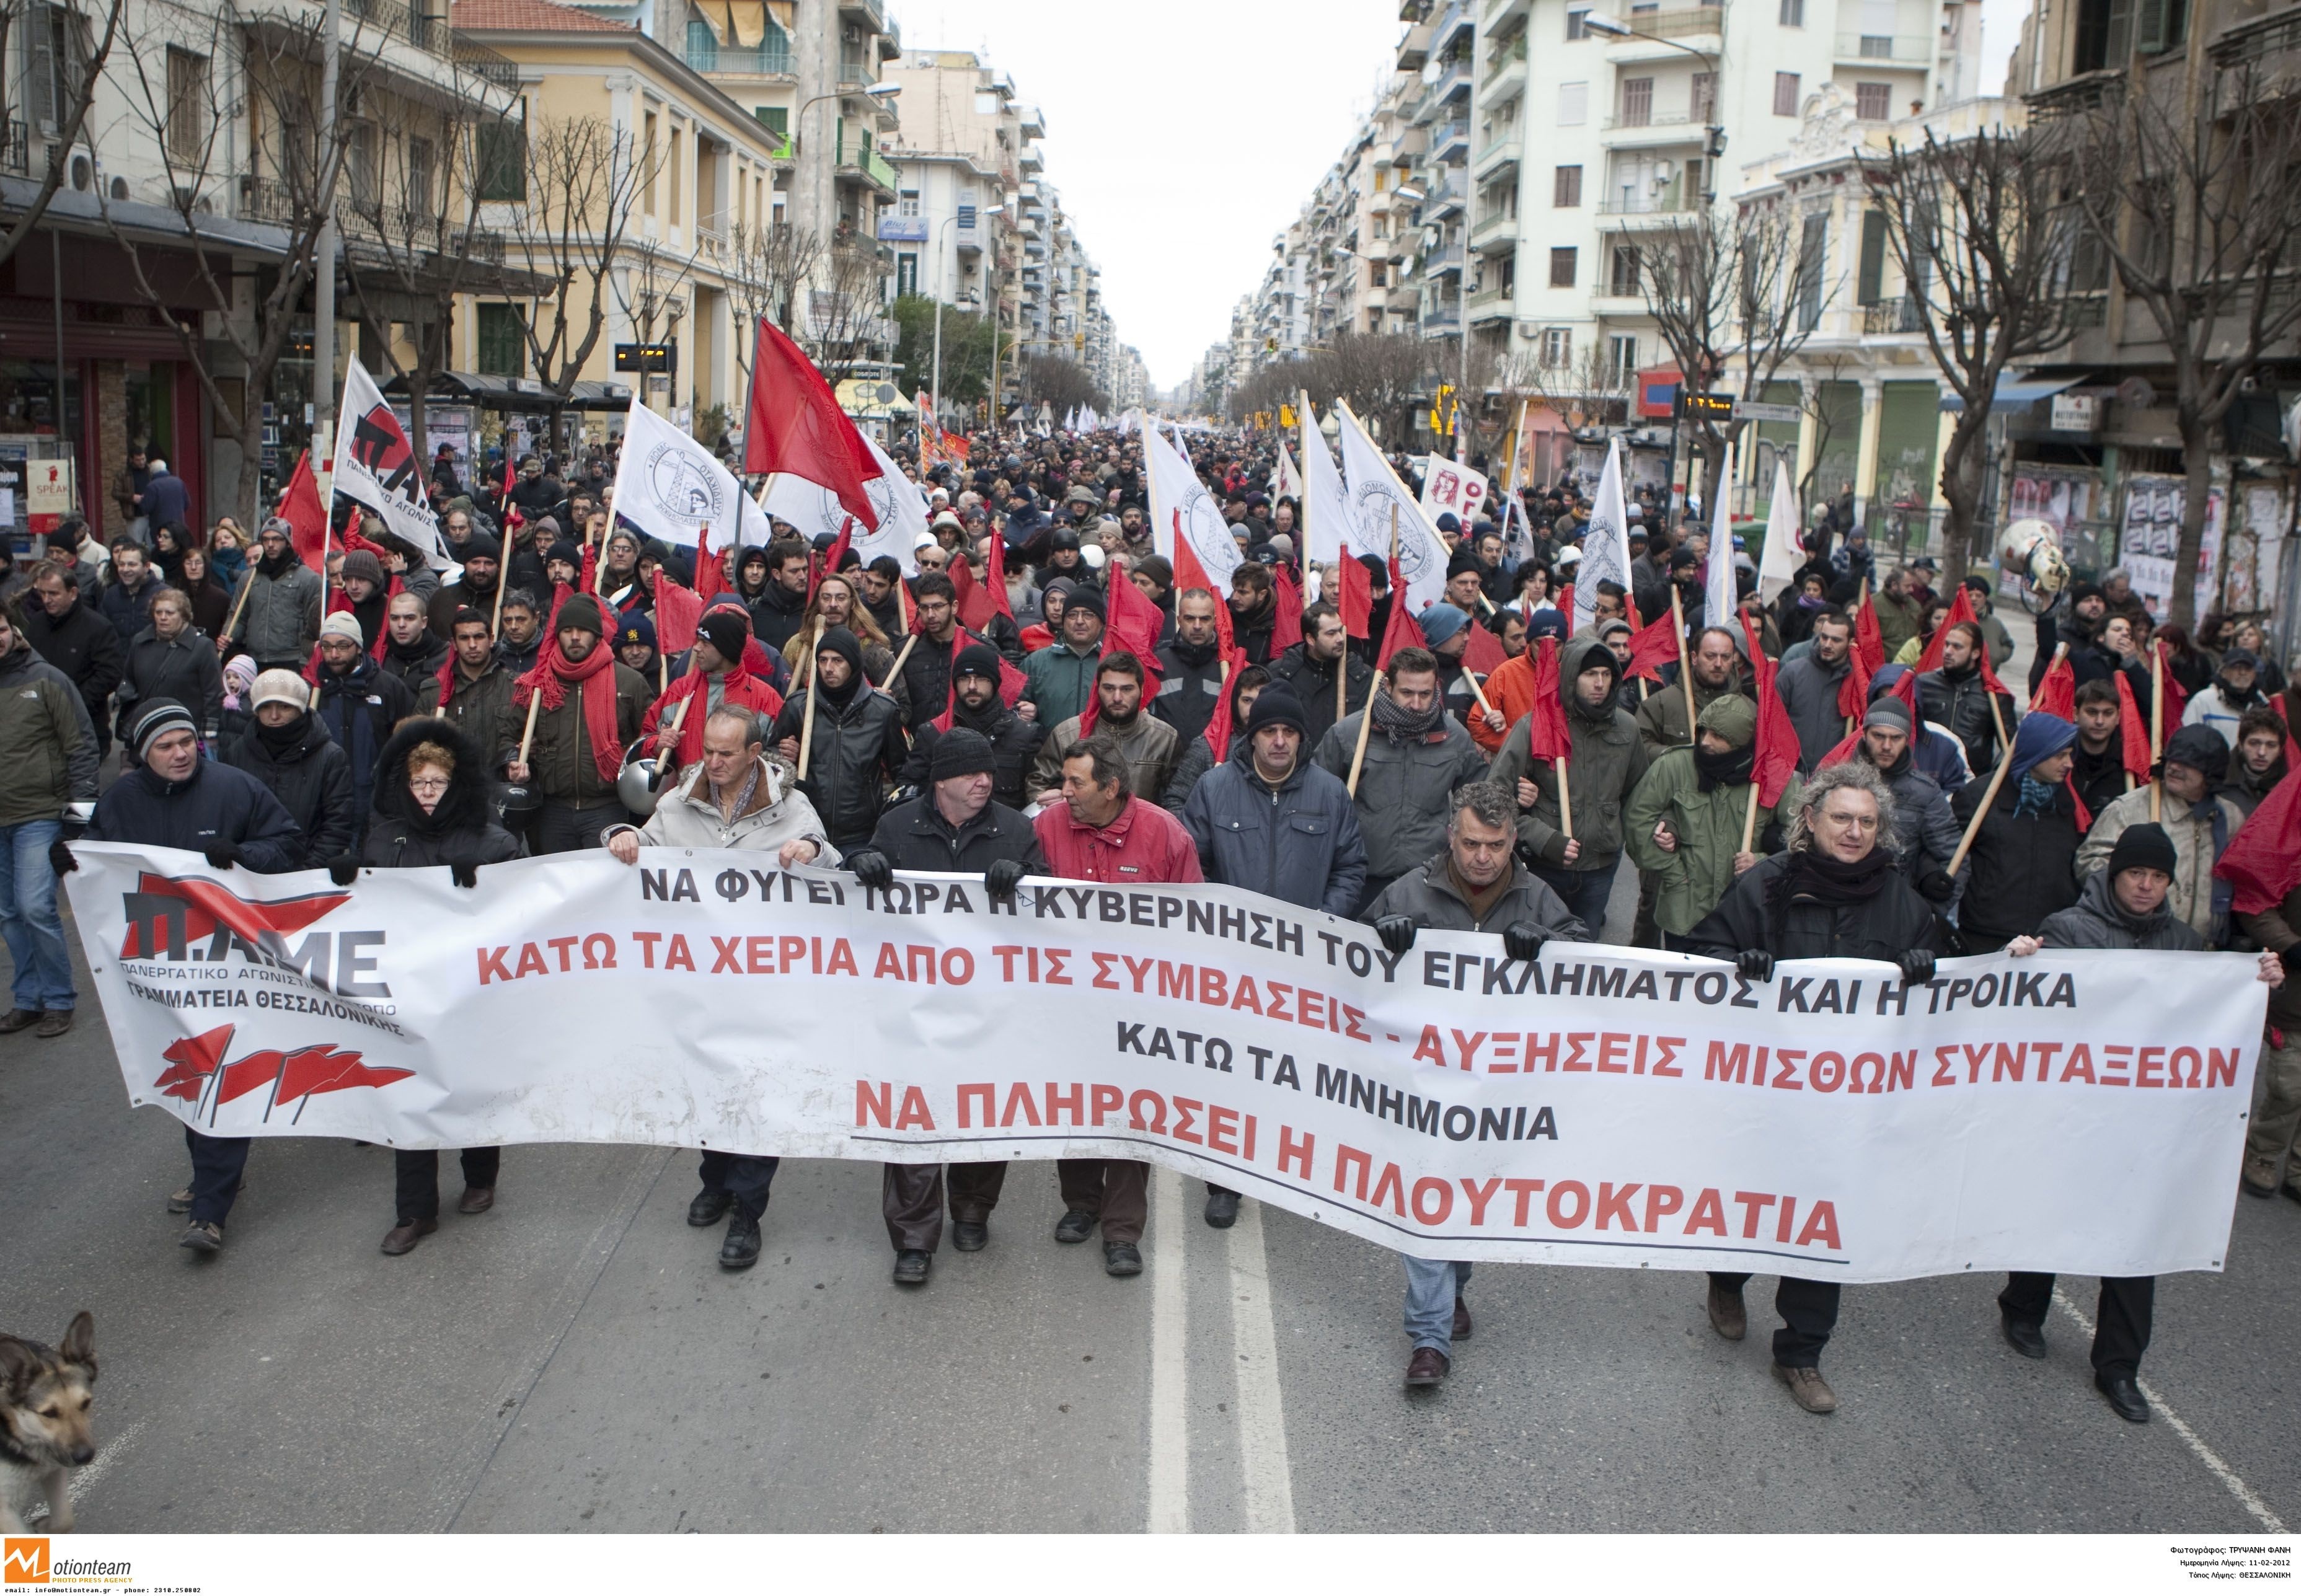 Σε αναβρασμό η Πελοπόννησος – Με μισθωμένα λεωφορεία αύριο στο Σύνταγμα